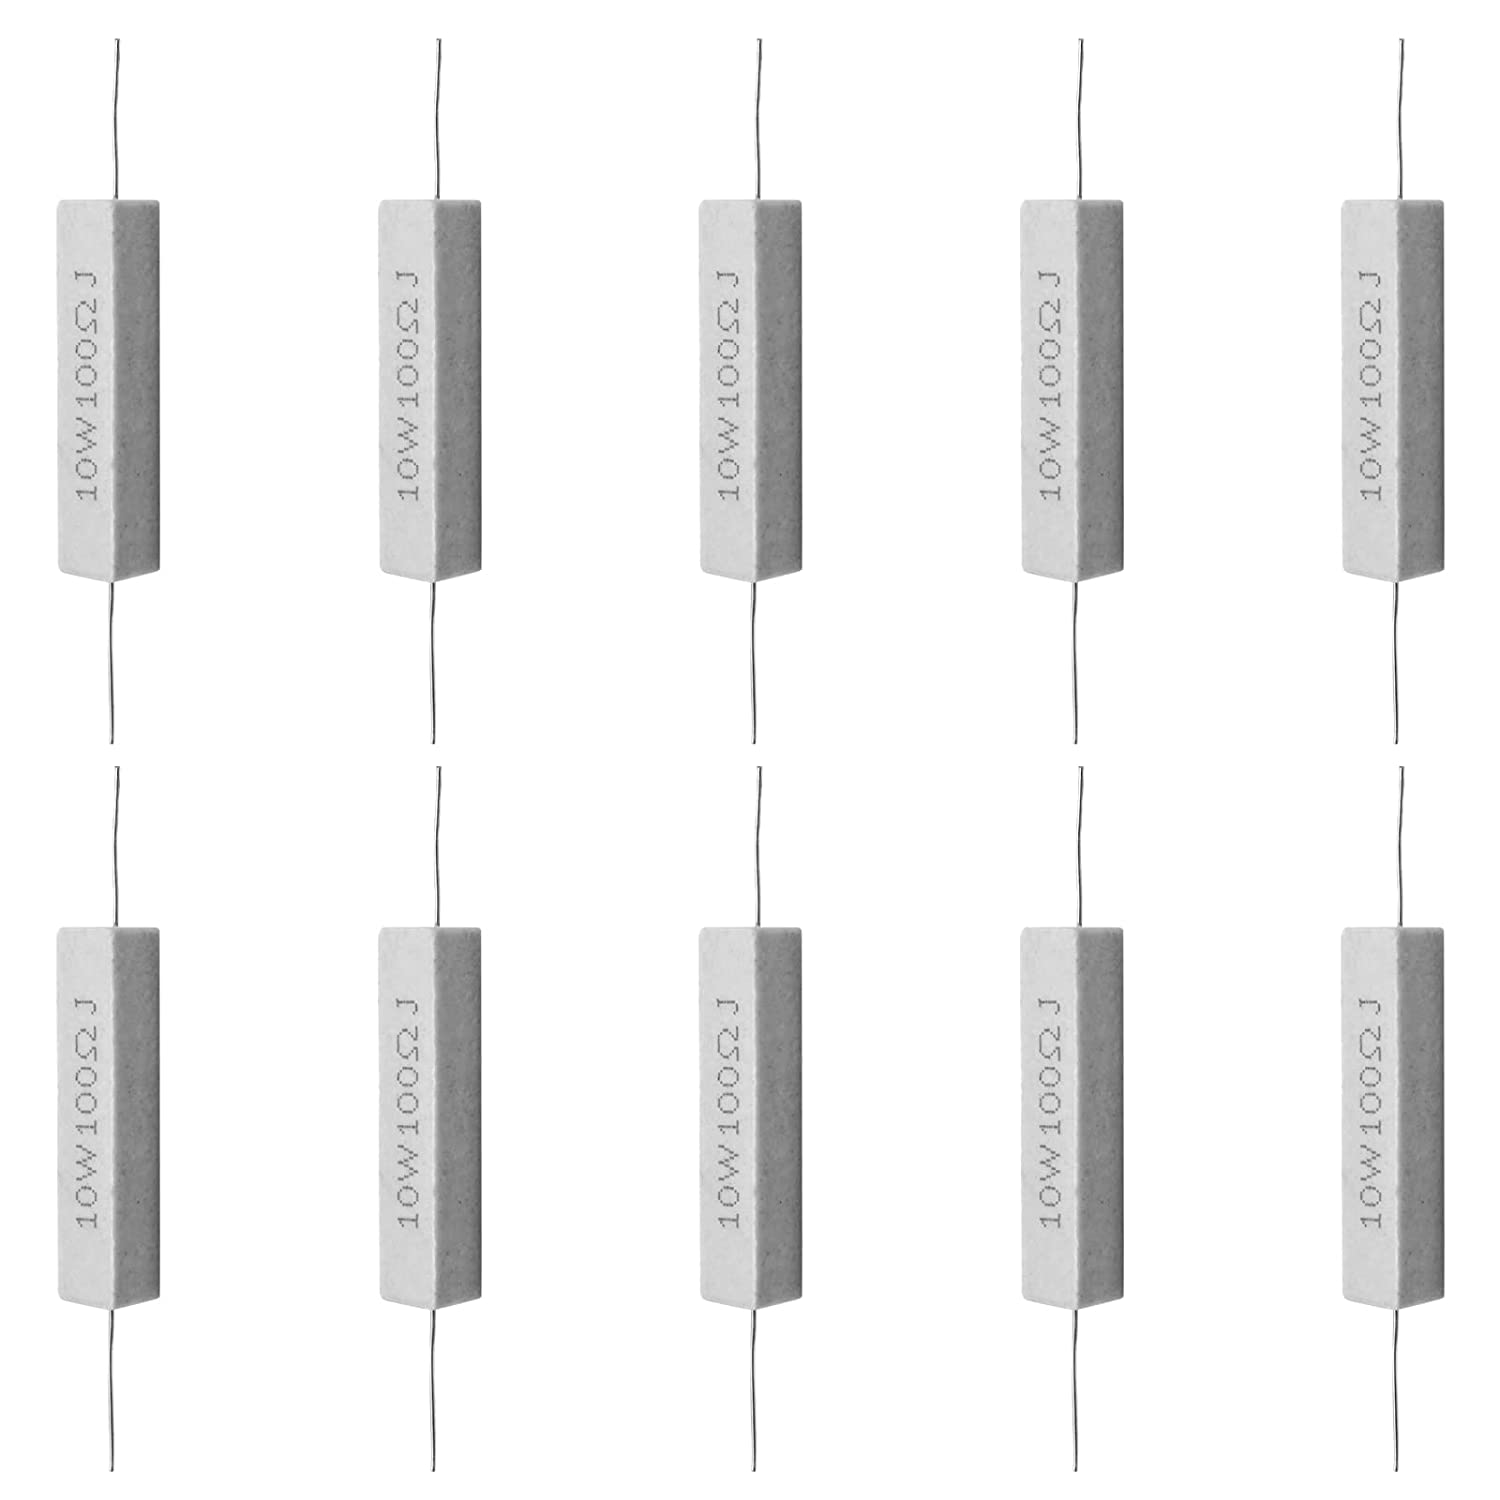 Murtenze 10Pcs Ceramic Cement Resistor, 10W 100 ohm Resistor Power Resistor Wire Wound Resistors Fixed Resistors, White